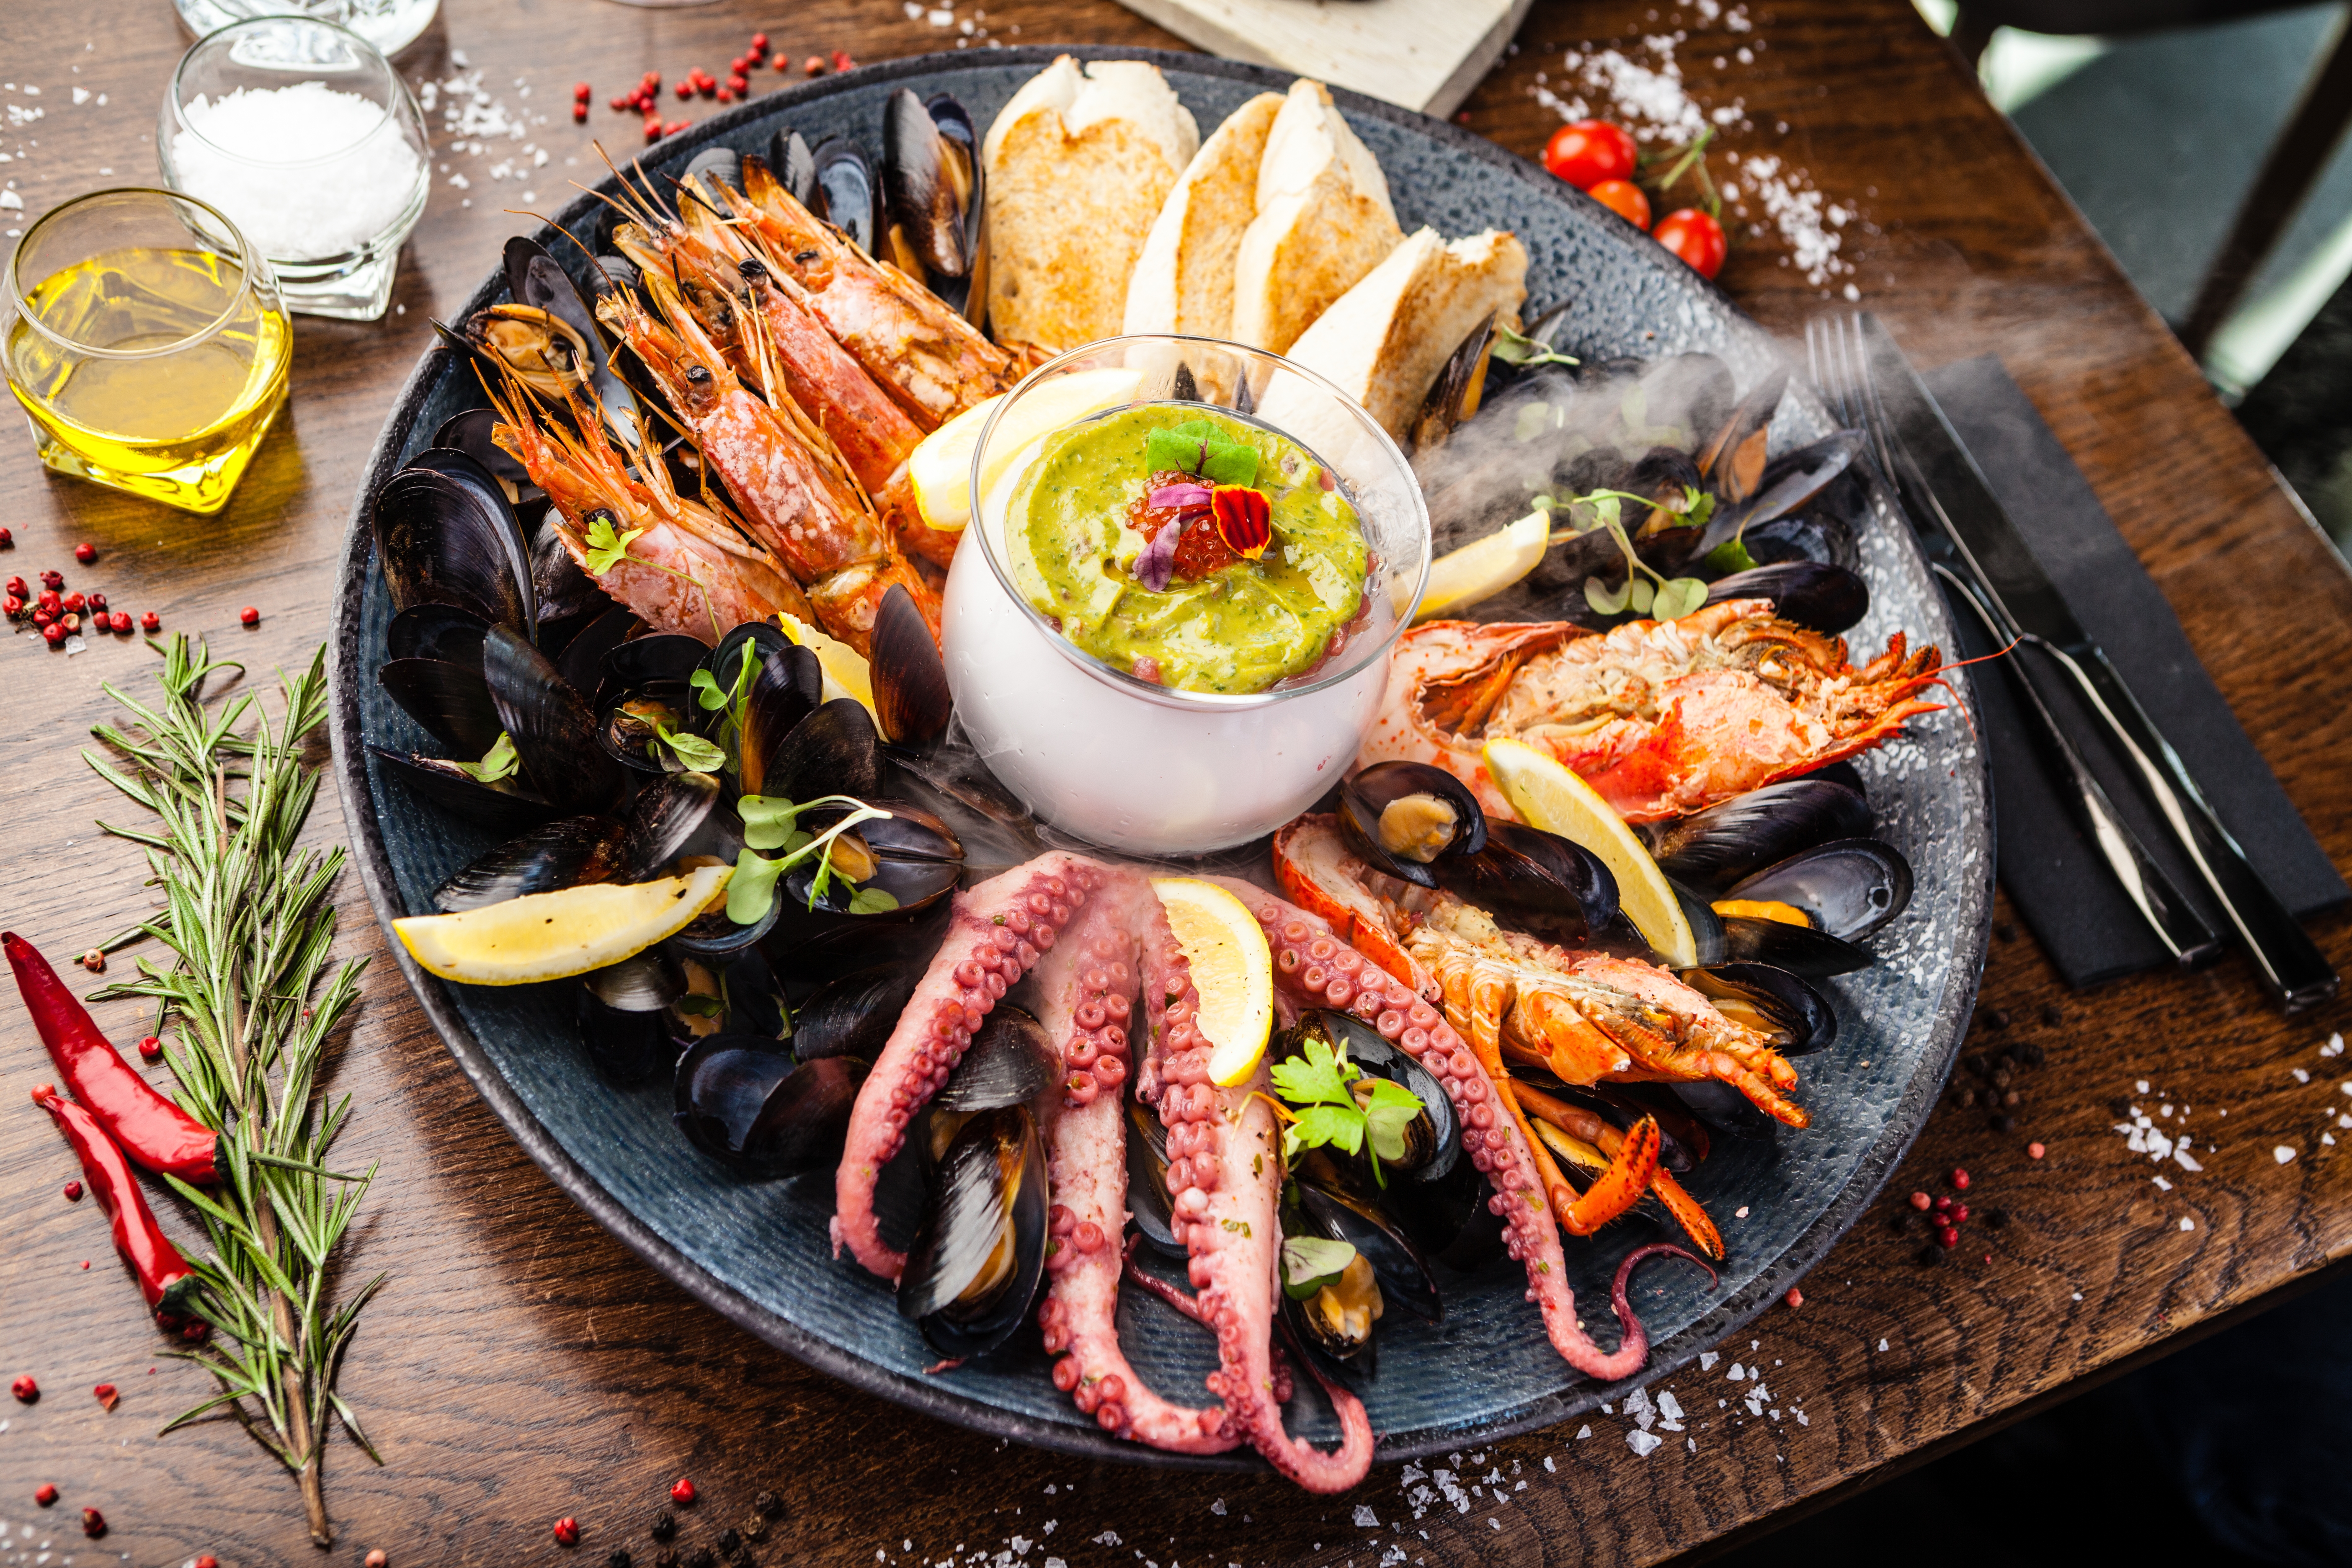 A seafood platter | Source: Shutterstock